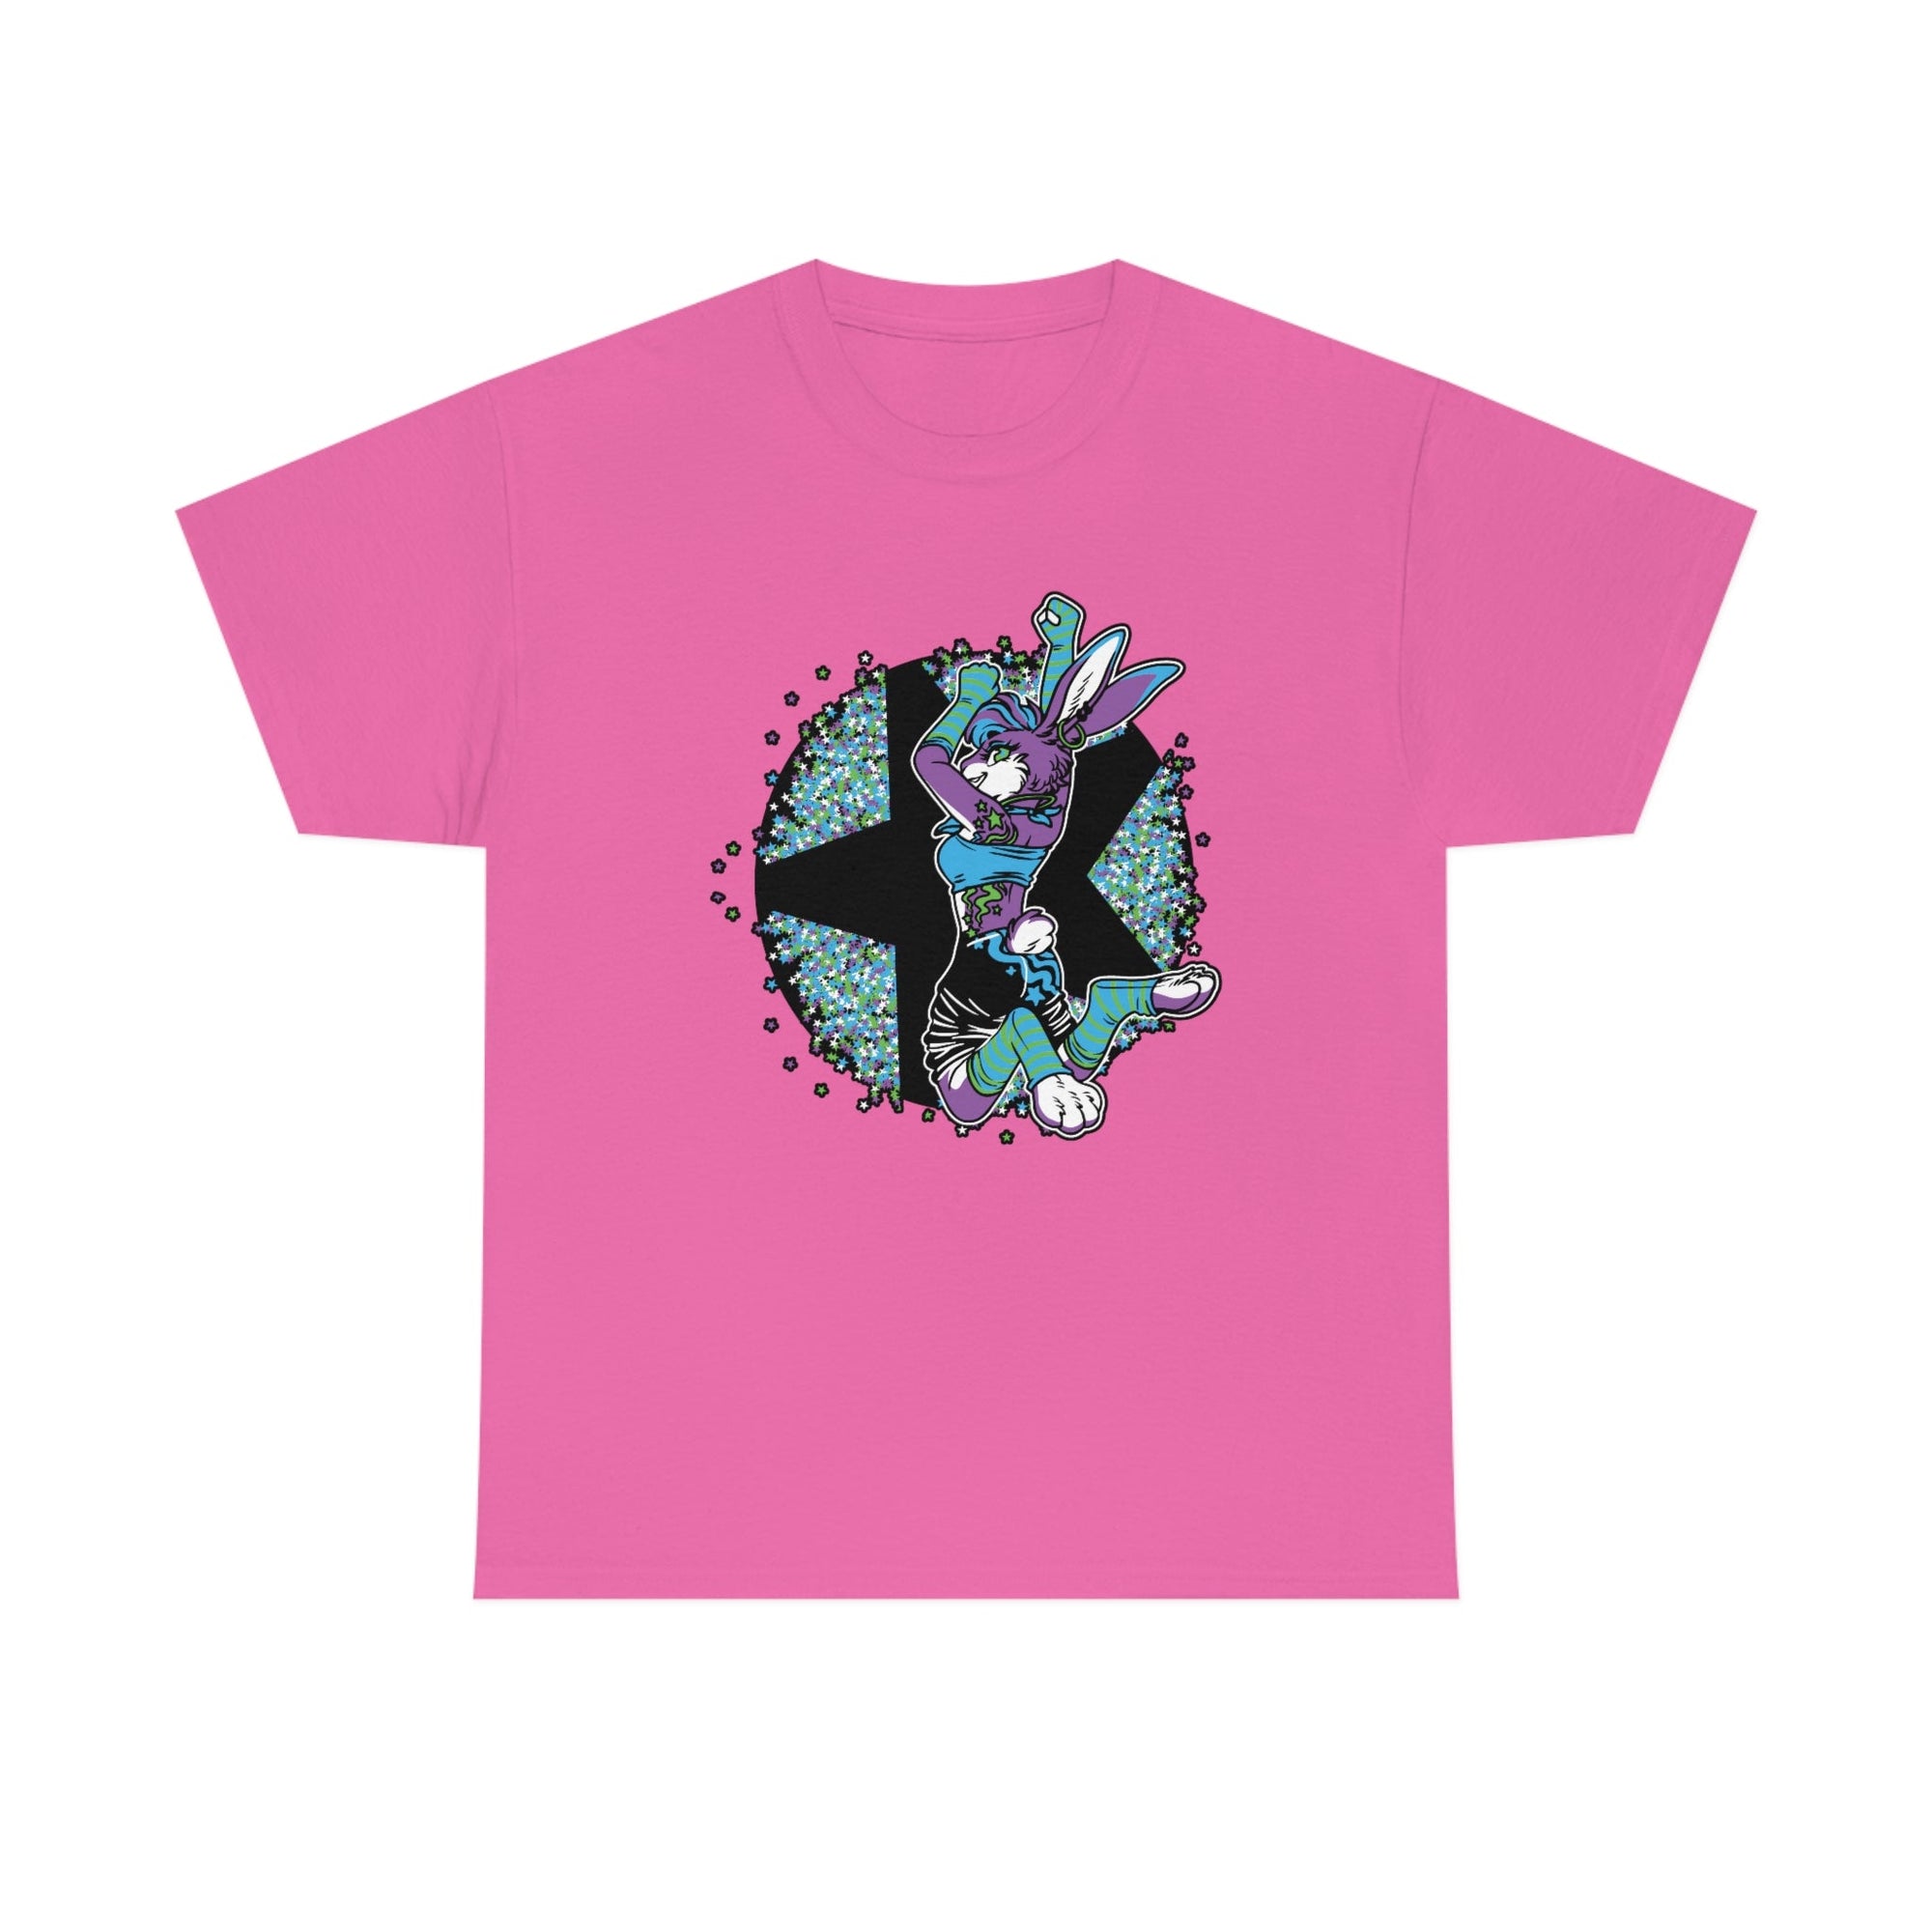 Rave Rabbit - T-Shirt T-Shirt Artworktee Pink S 